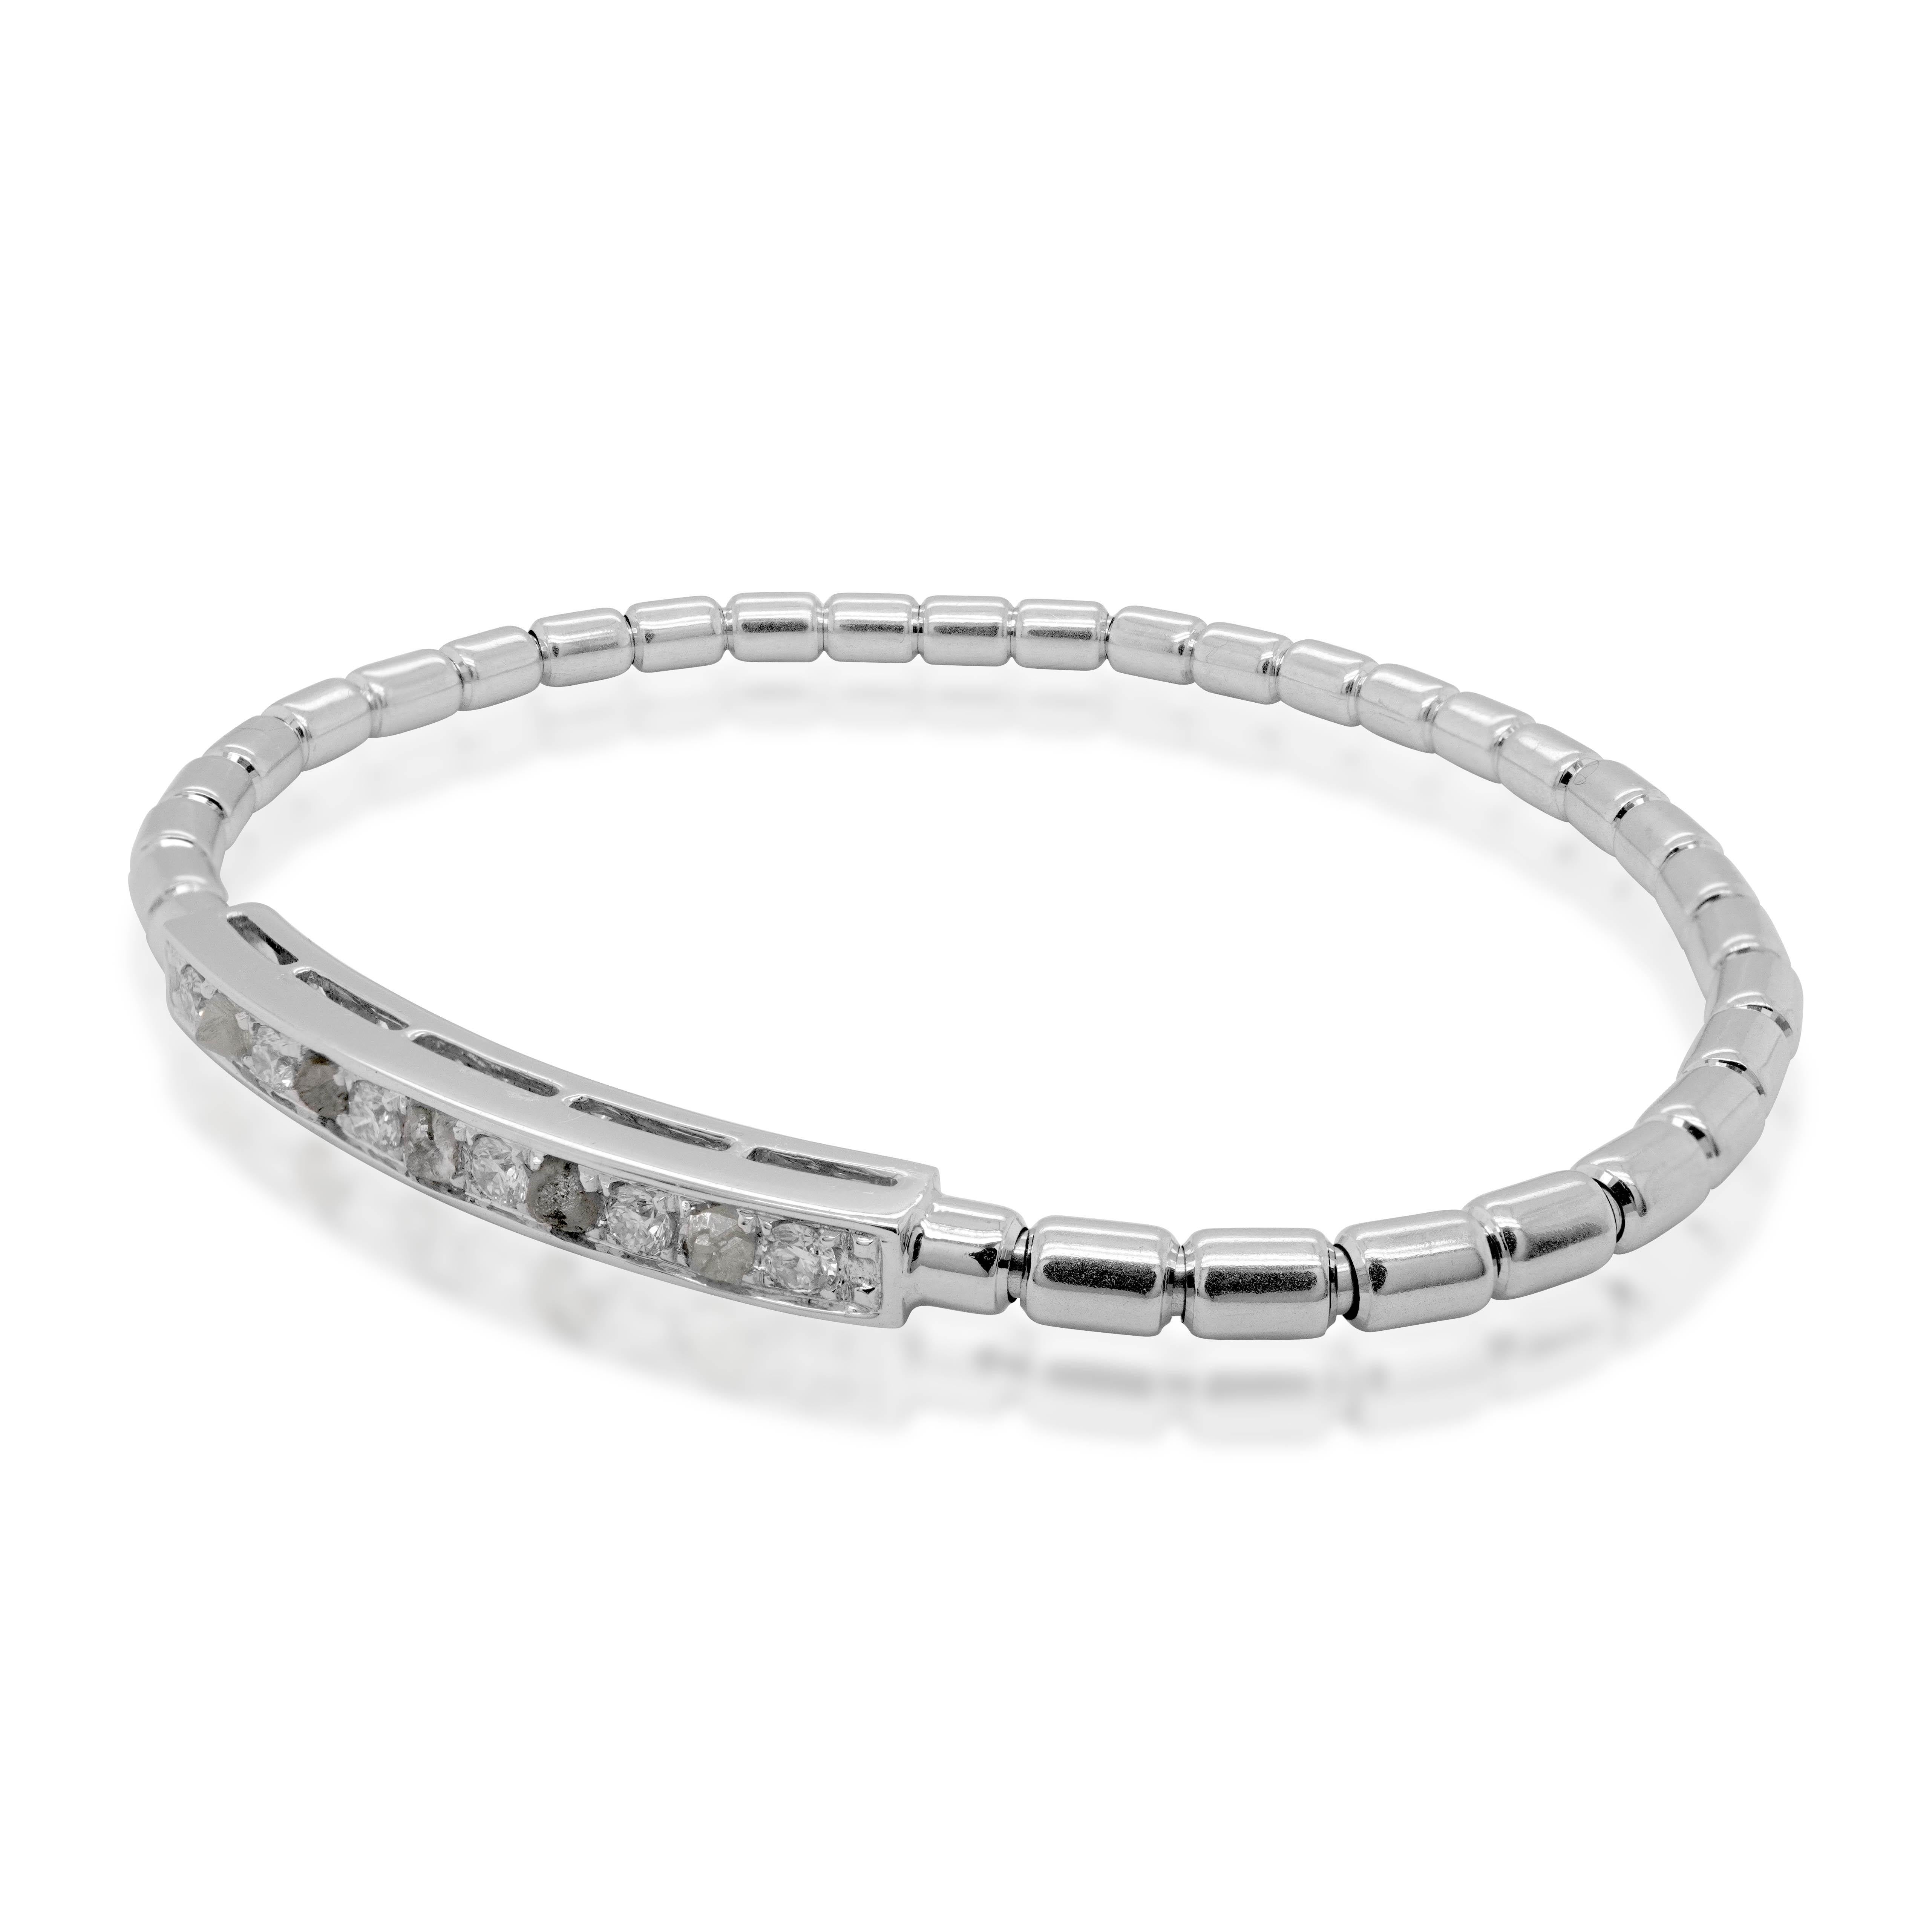 Utilisant une innovation de rupture, ce bracelet en or blanc 18 carats utilise une technologie japonaise pour le bracelet. Utilisant un diamant rond blanc et des diamants bruts gris acier, le bracelet 18K est une tenue chic et cool